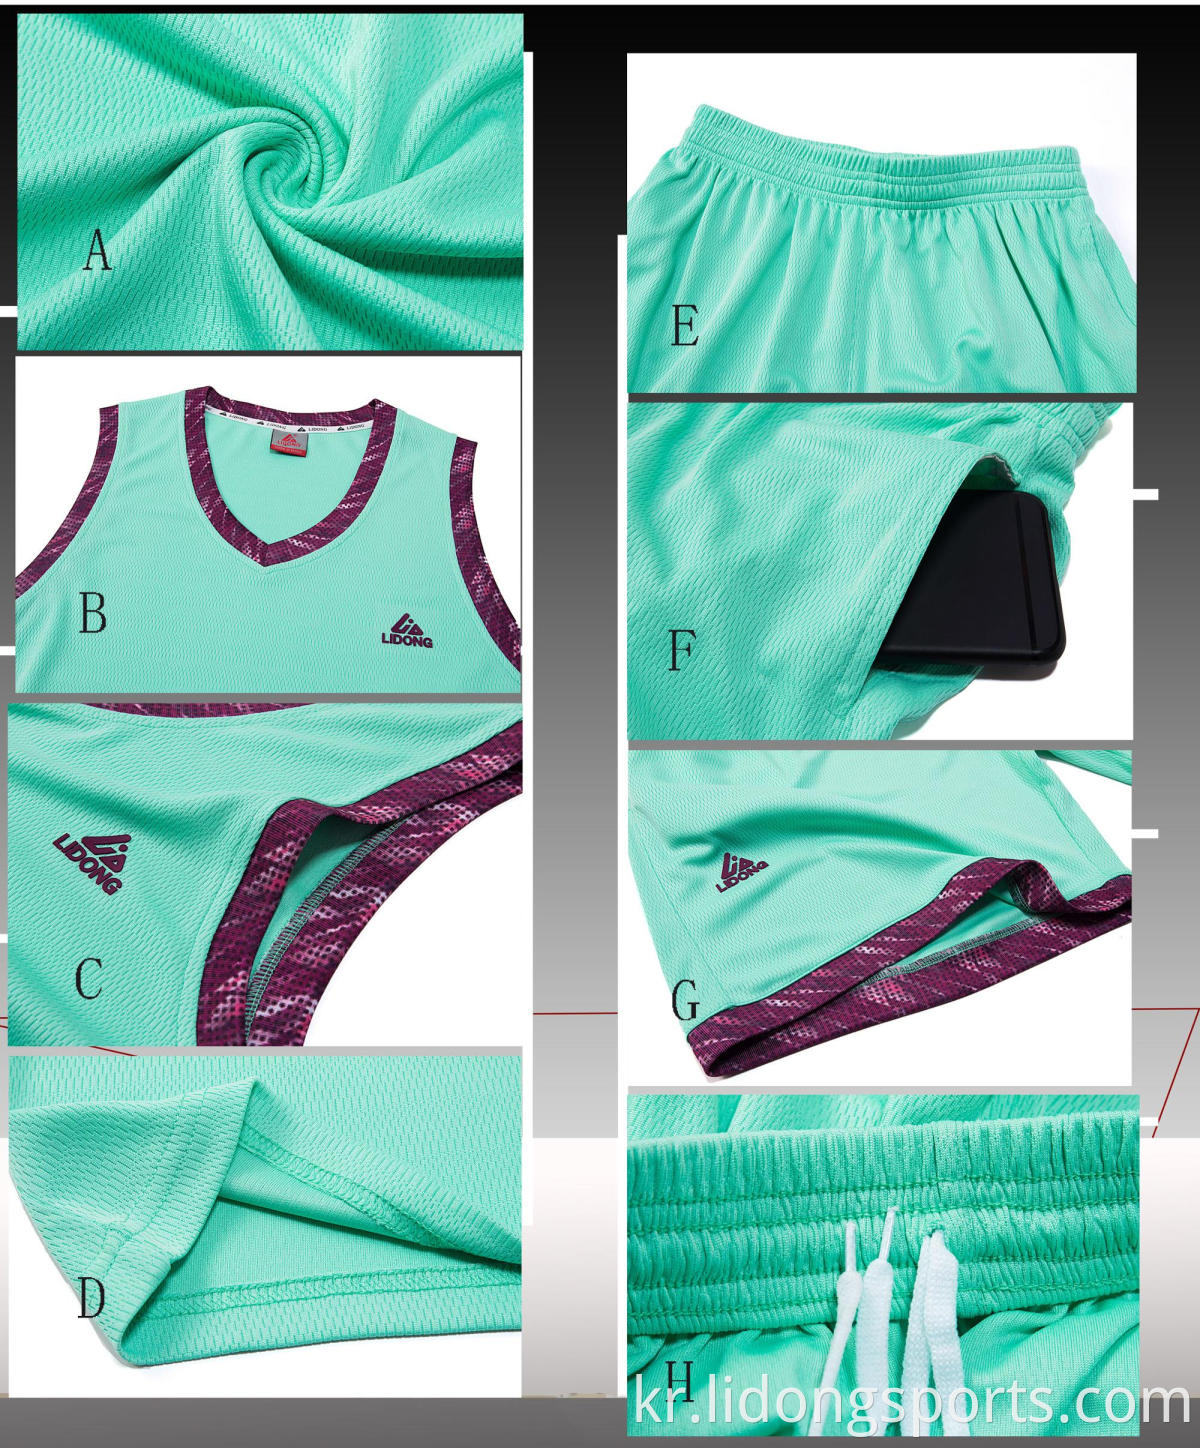 최신 농구 저지 디자인 2021 도매 블랭크 커스텀 농구 유니폼